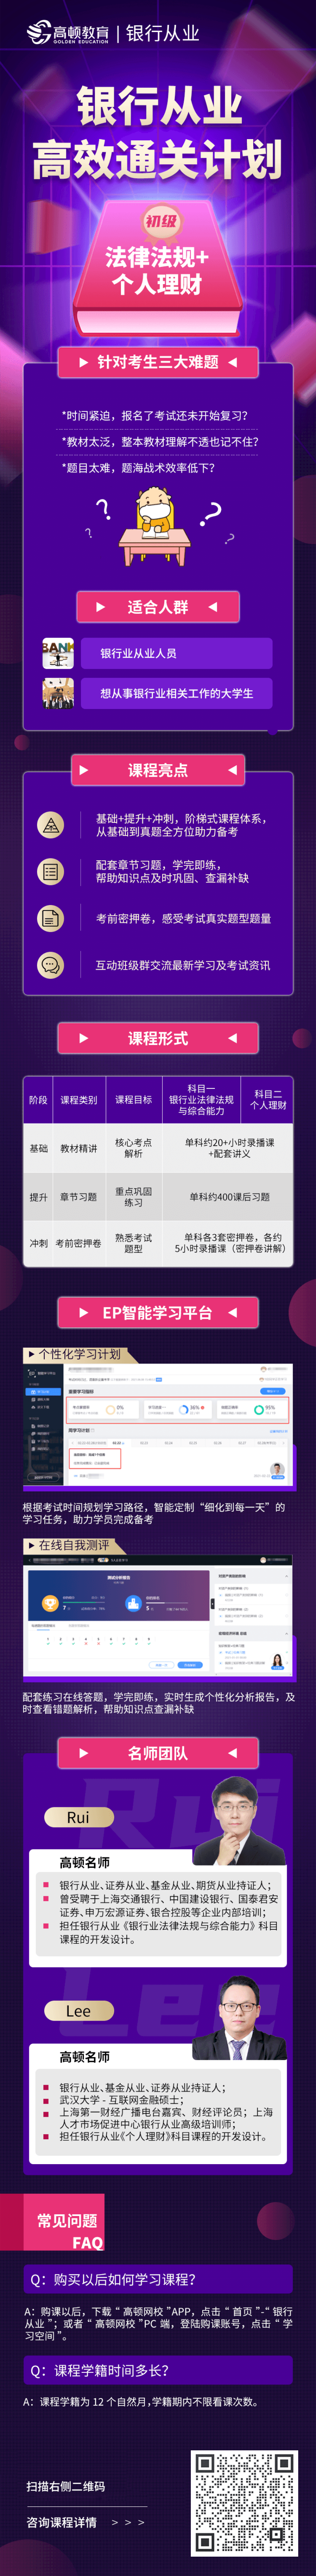 https://simg01.gaodunwangxiao.com/uploadfiles/product-center/202211/23/6e878_20221123171214.png